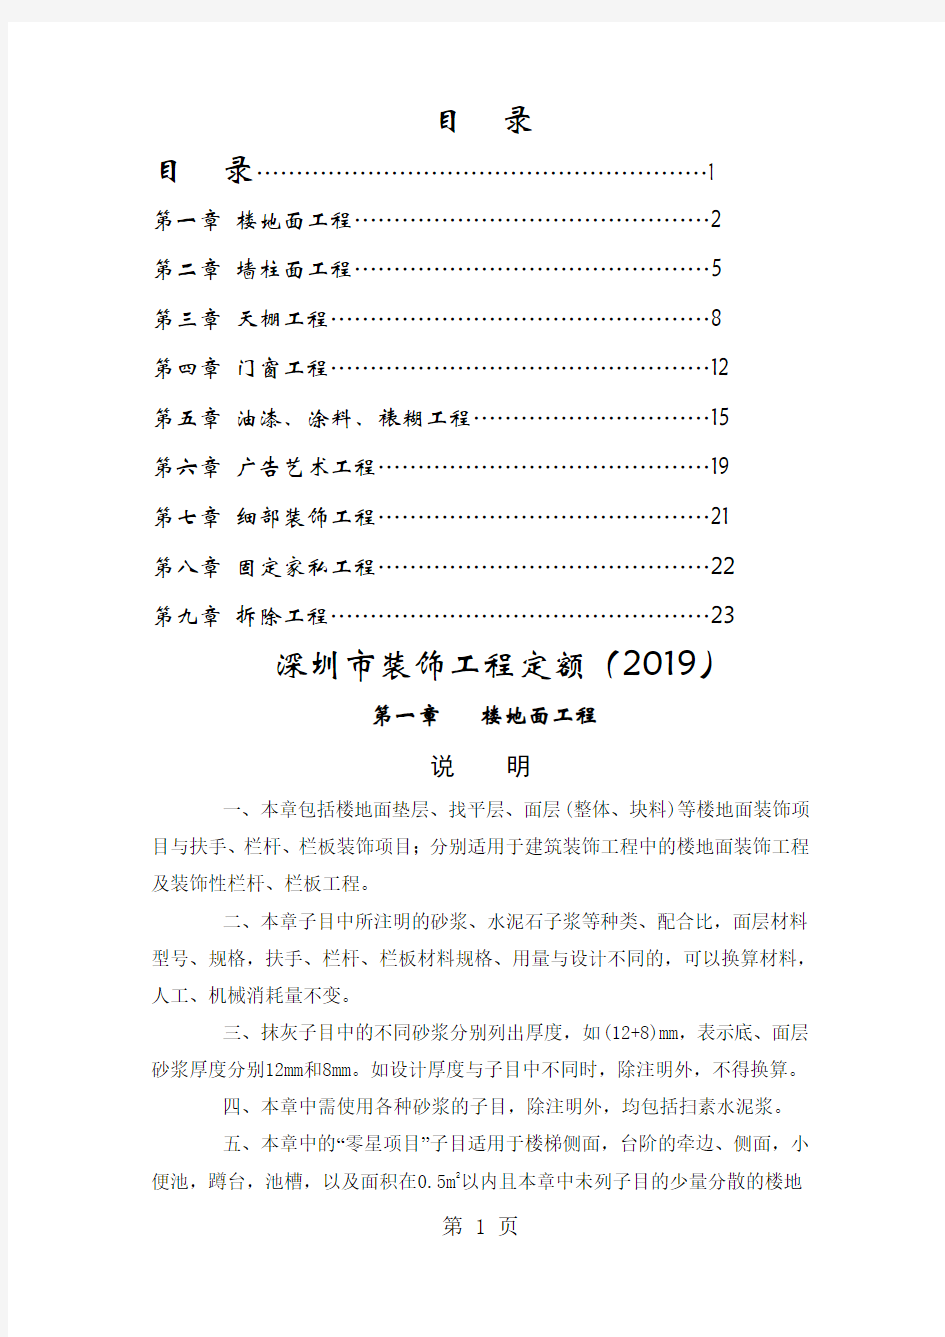 深圳市装饰工程定额(2019)共22页文档